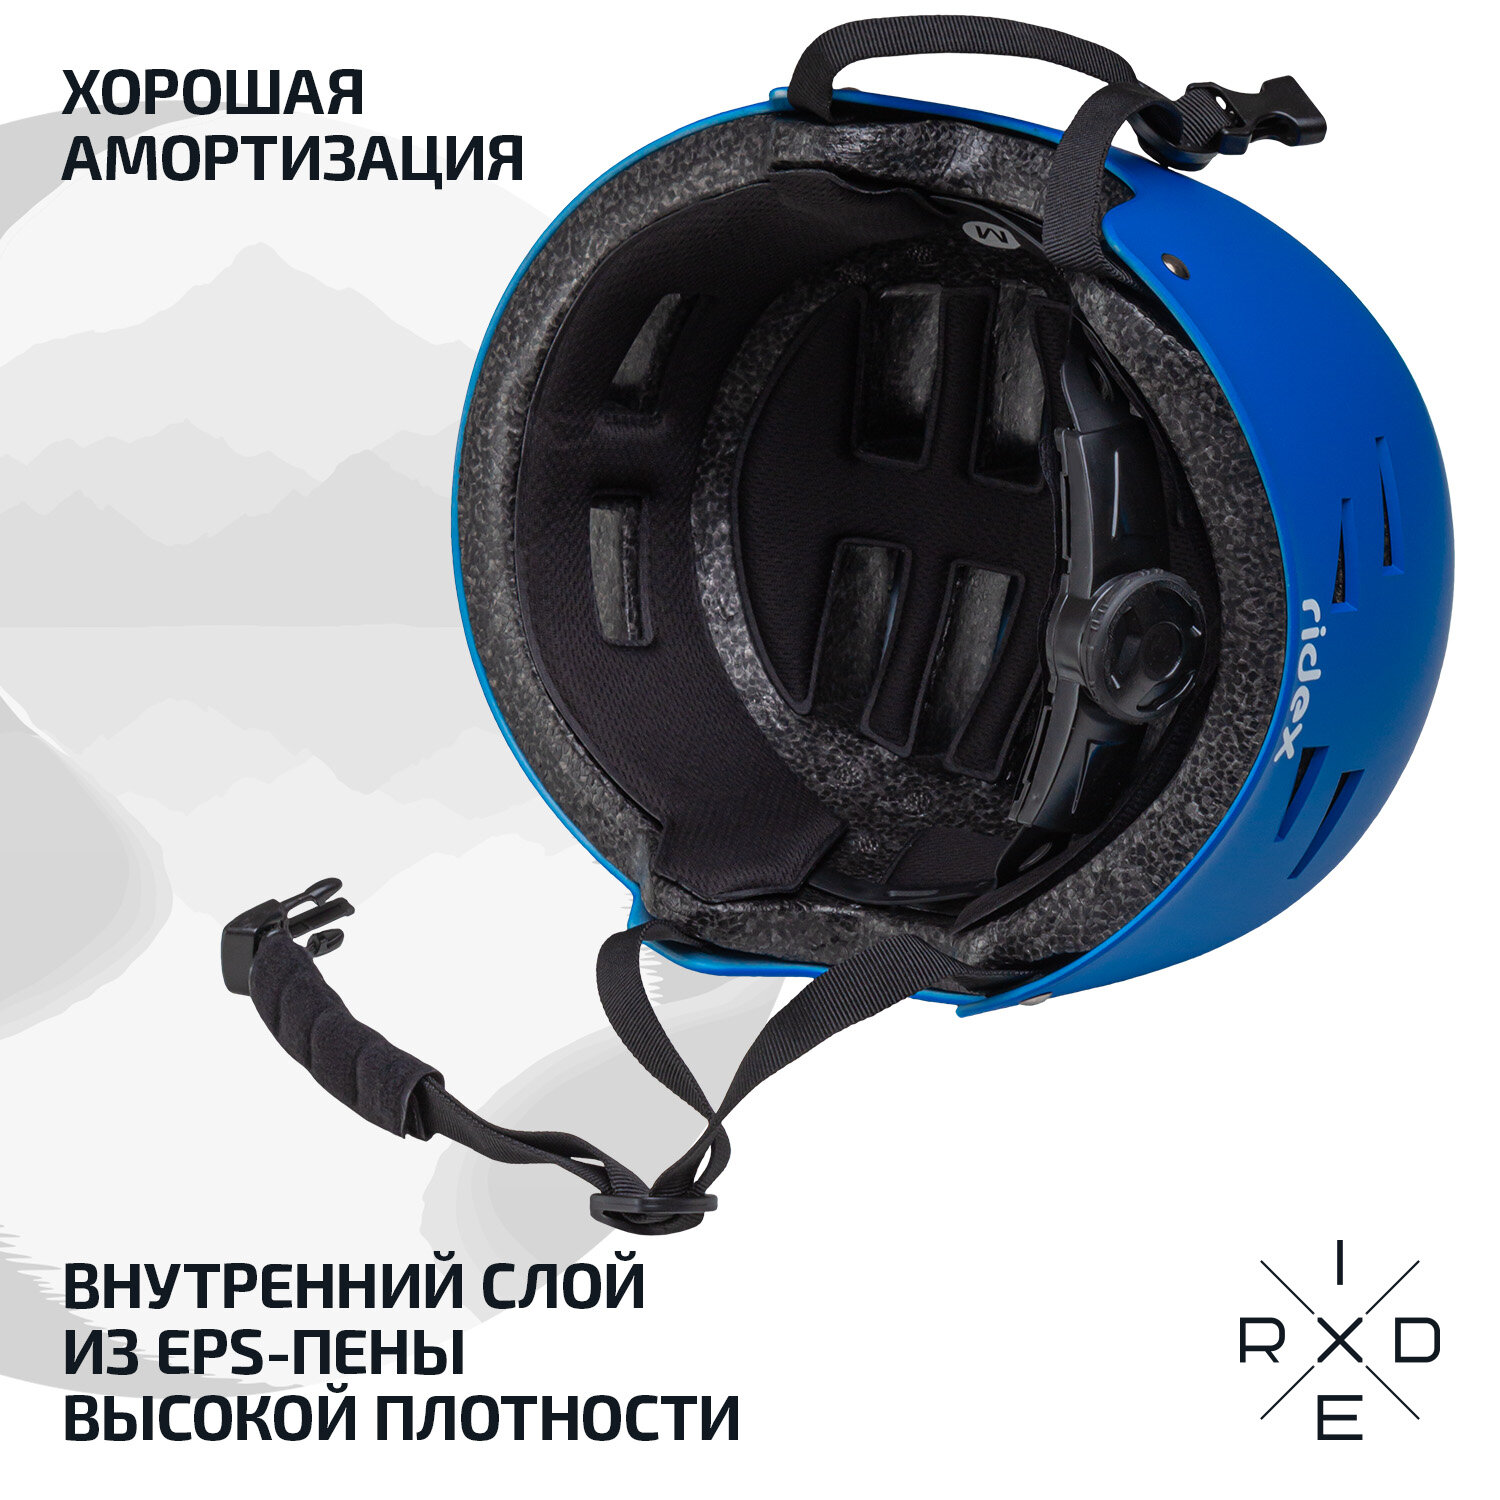 Шлем защитный RIDEX Creative, с регулировкой, цвет синий, размер S